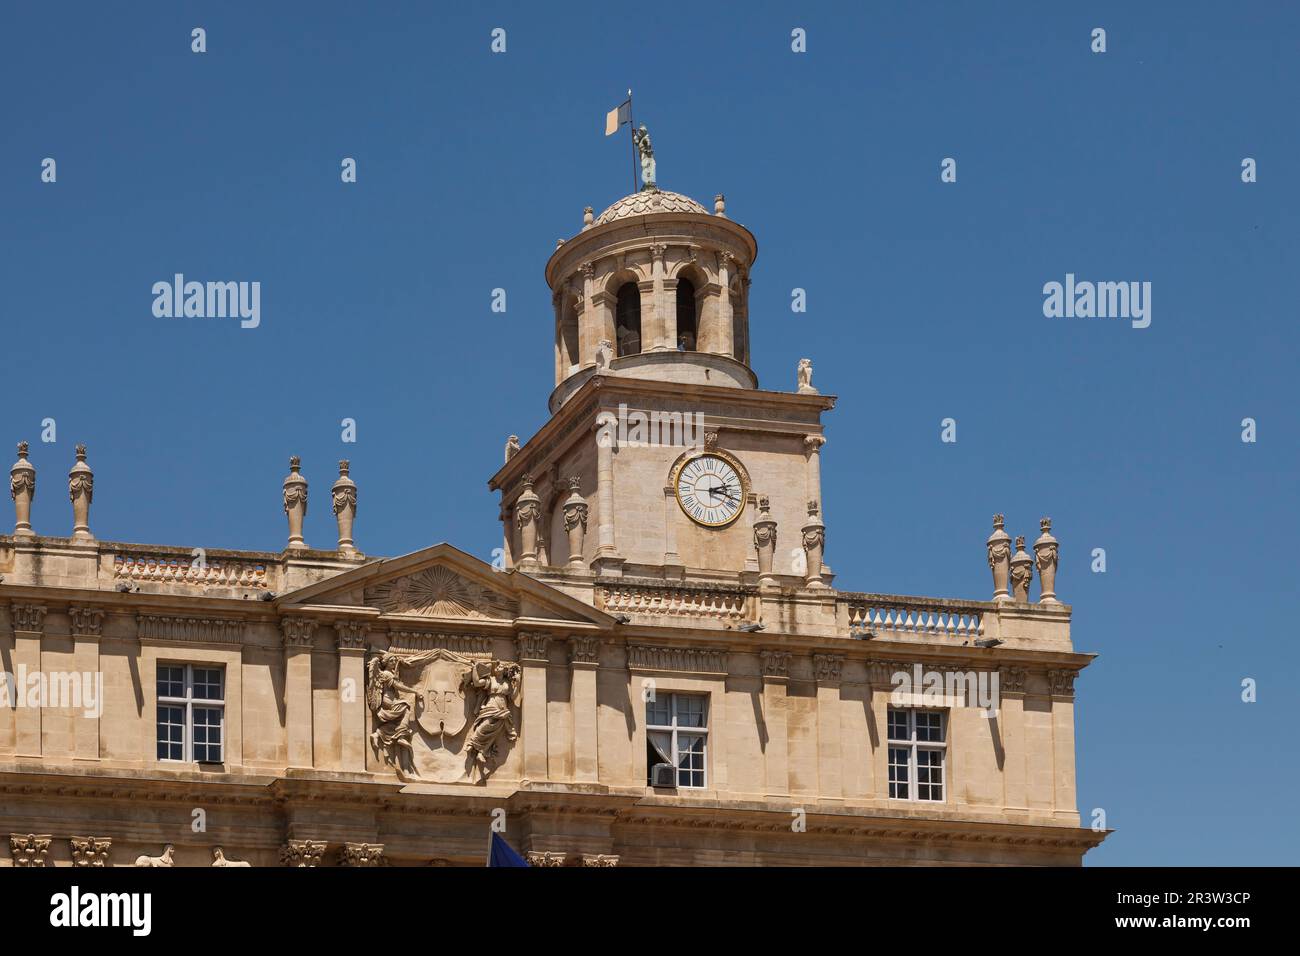 Arles, City Hall, Place de la Republique, Republic Square, Provence, South of France Stock Photo